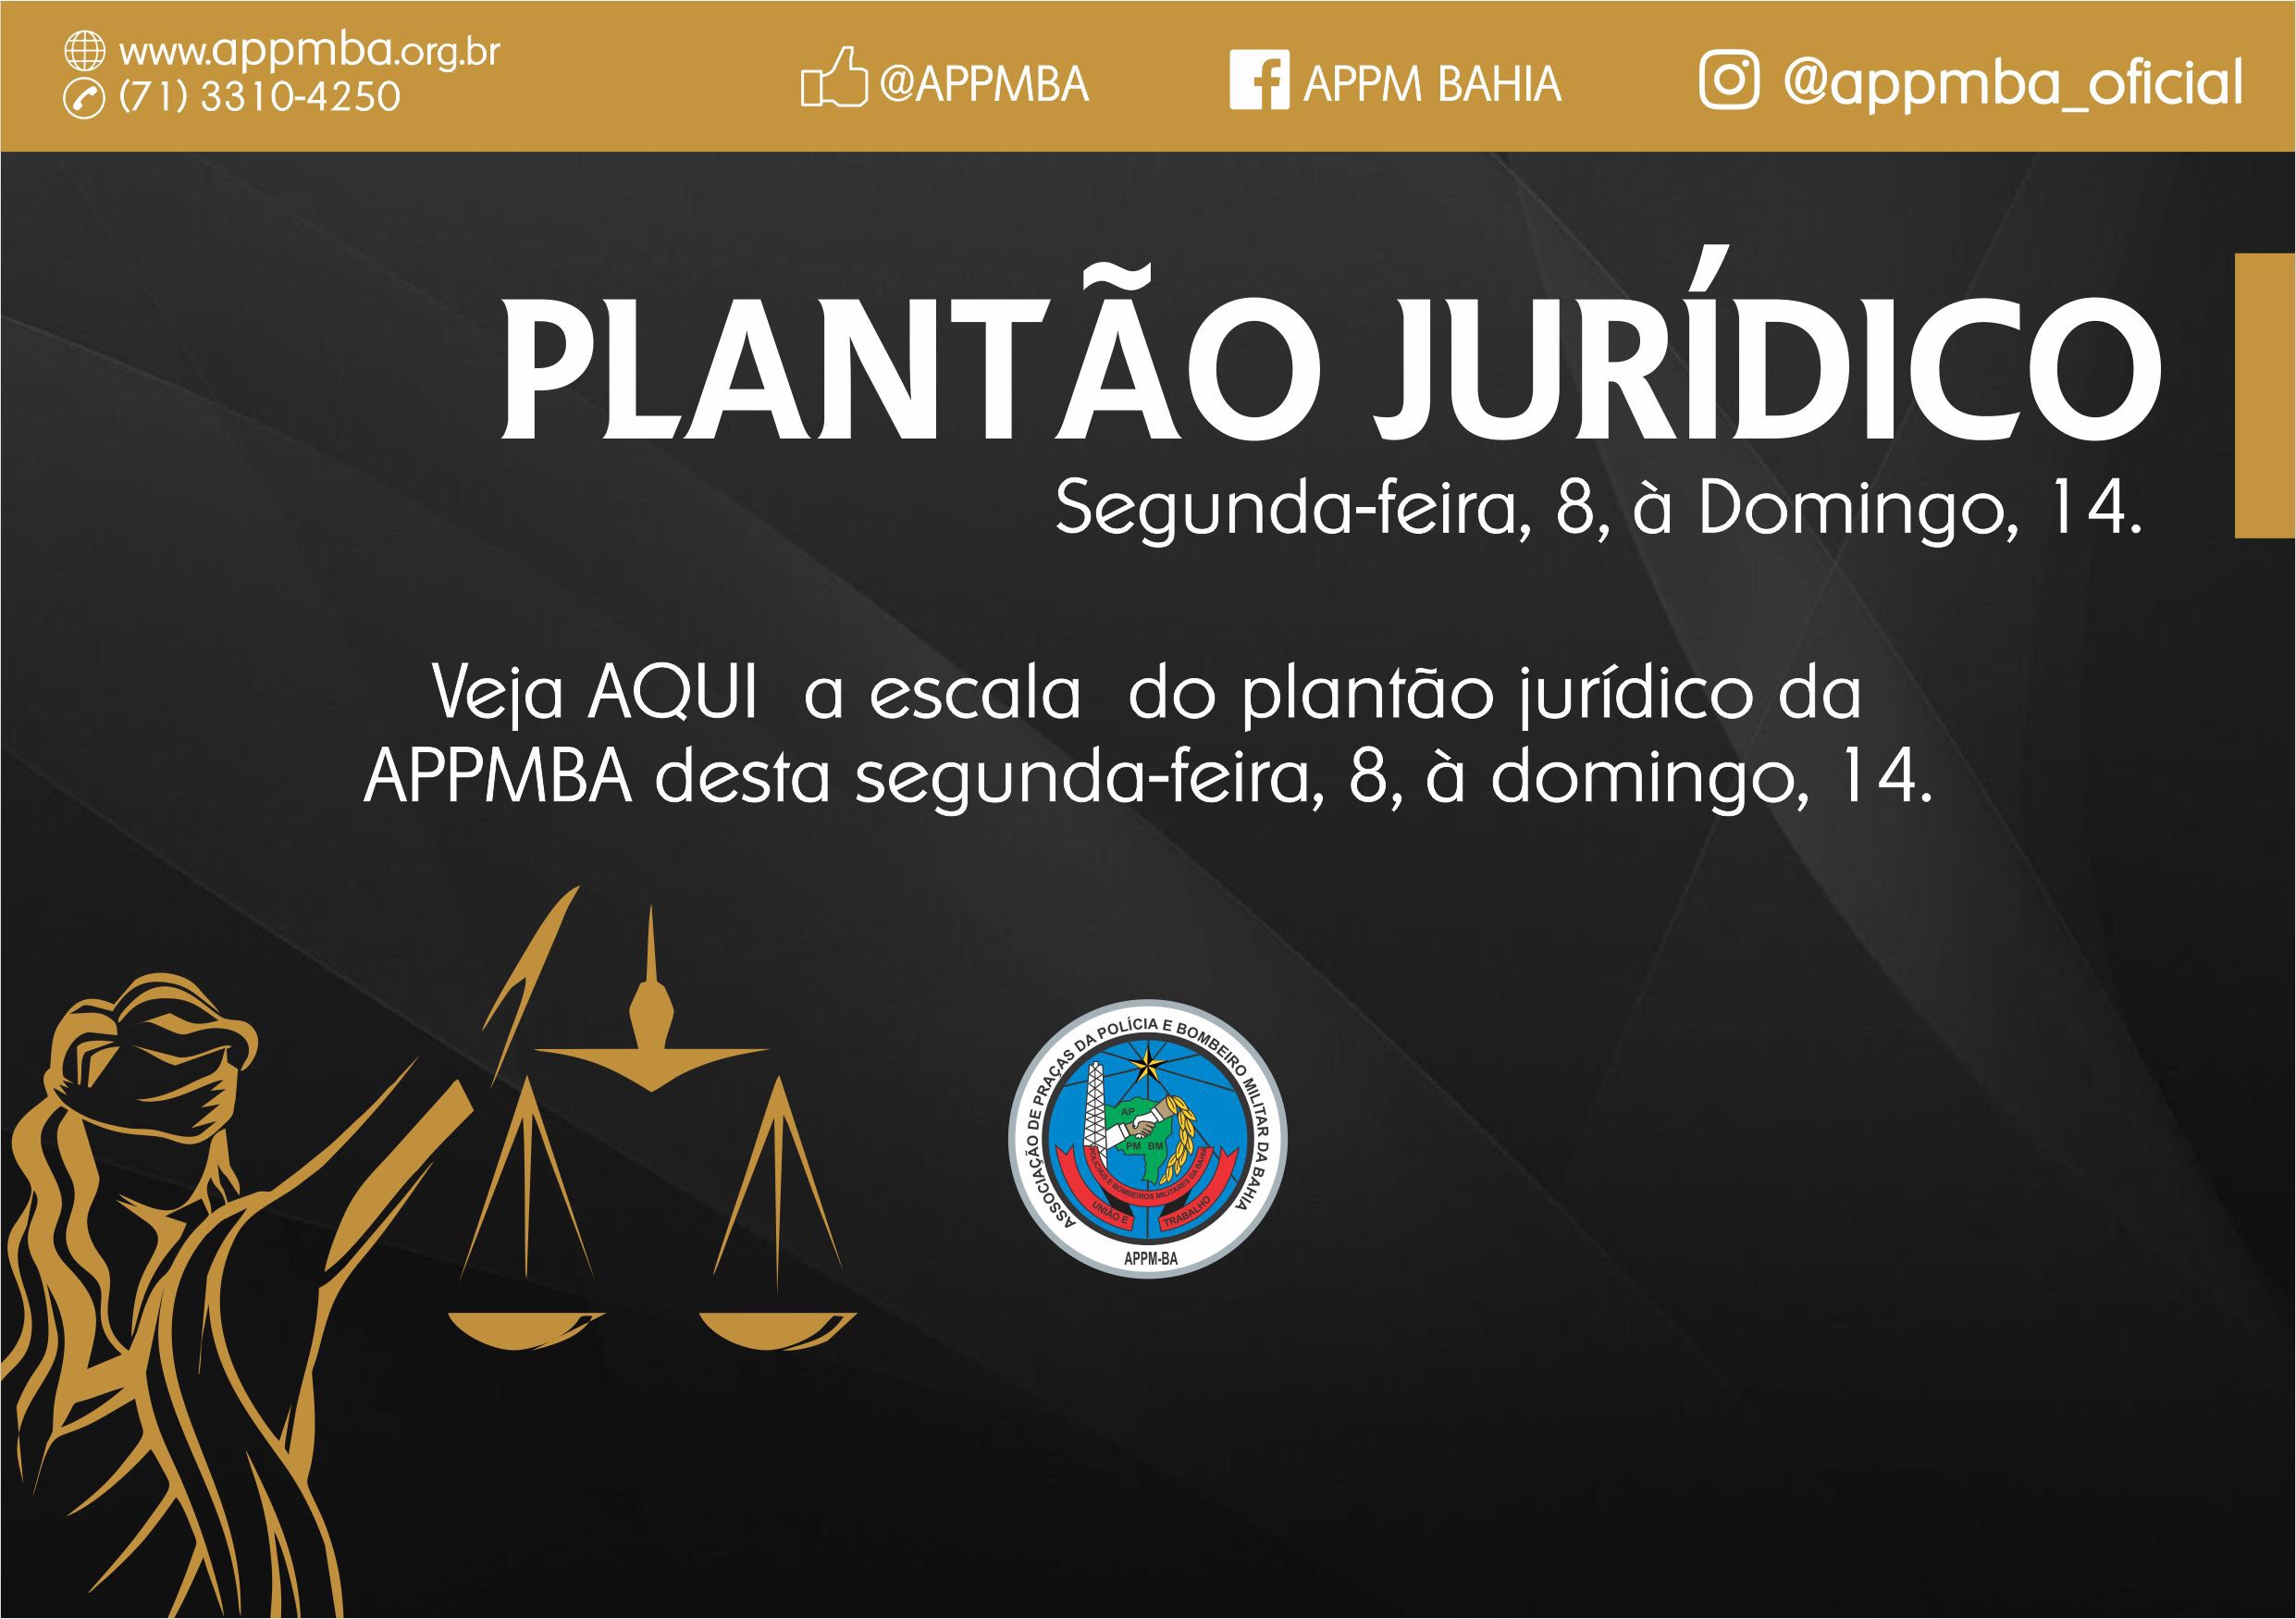 Plantão Jurídico APPM-BA, dias 8 à 14/10/2018